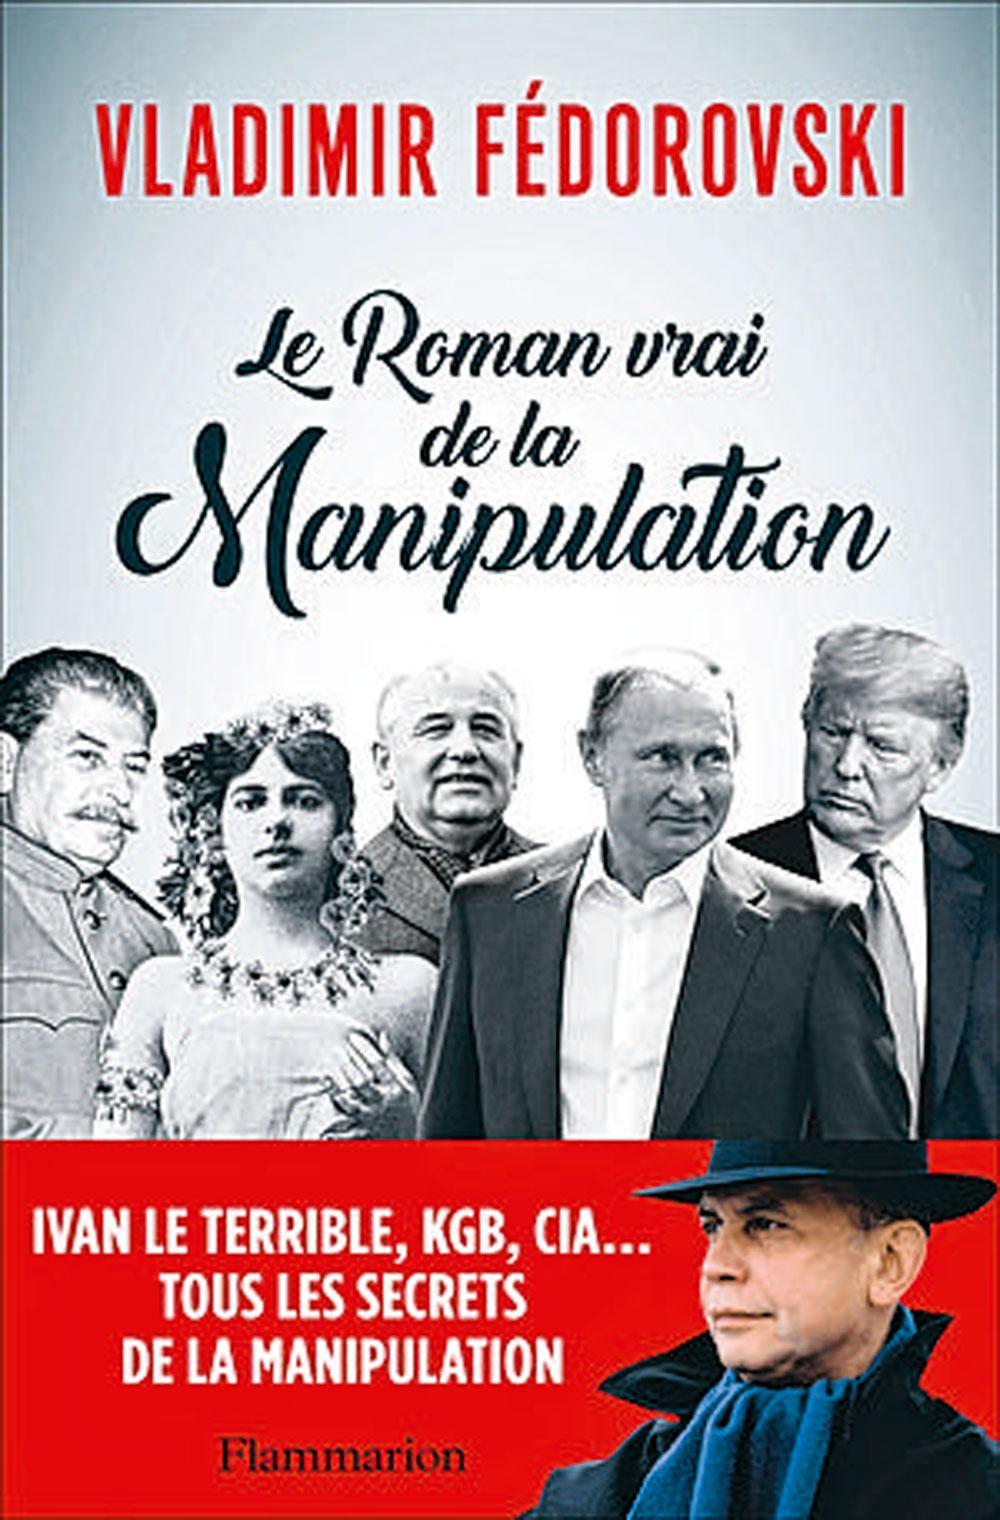 (1) Le Roman vrai de la manipulation, par Vladimir Fédorovski, Flammarion, 272 p. (2) Interview vidéo sur levif.be